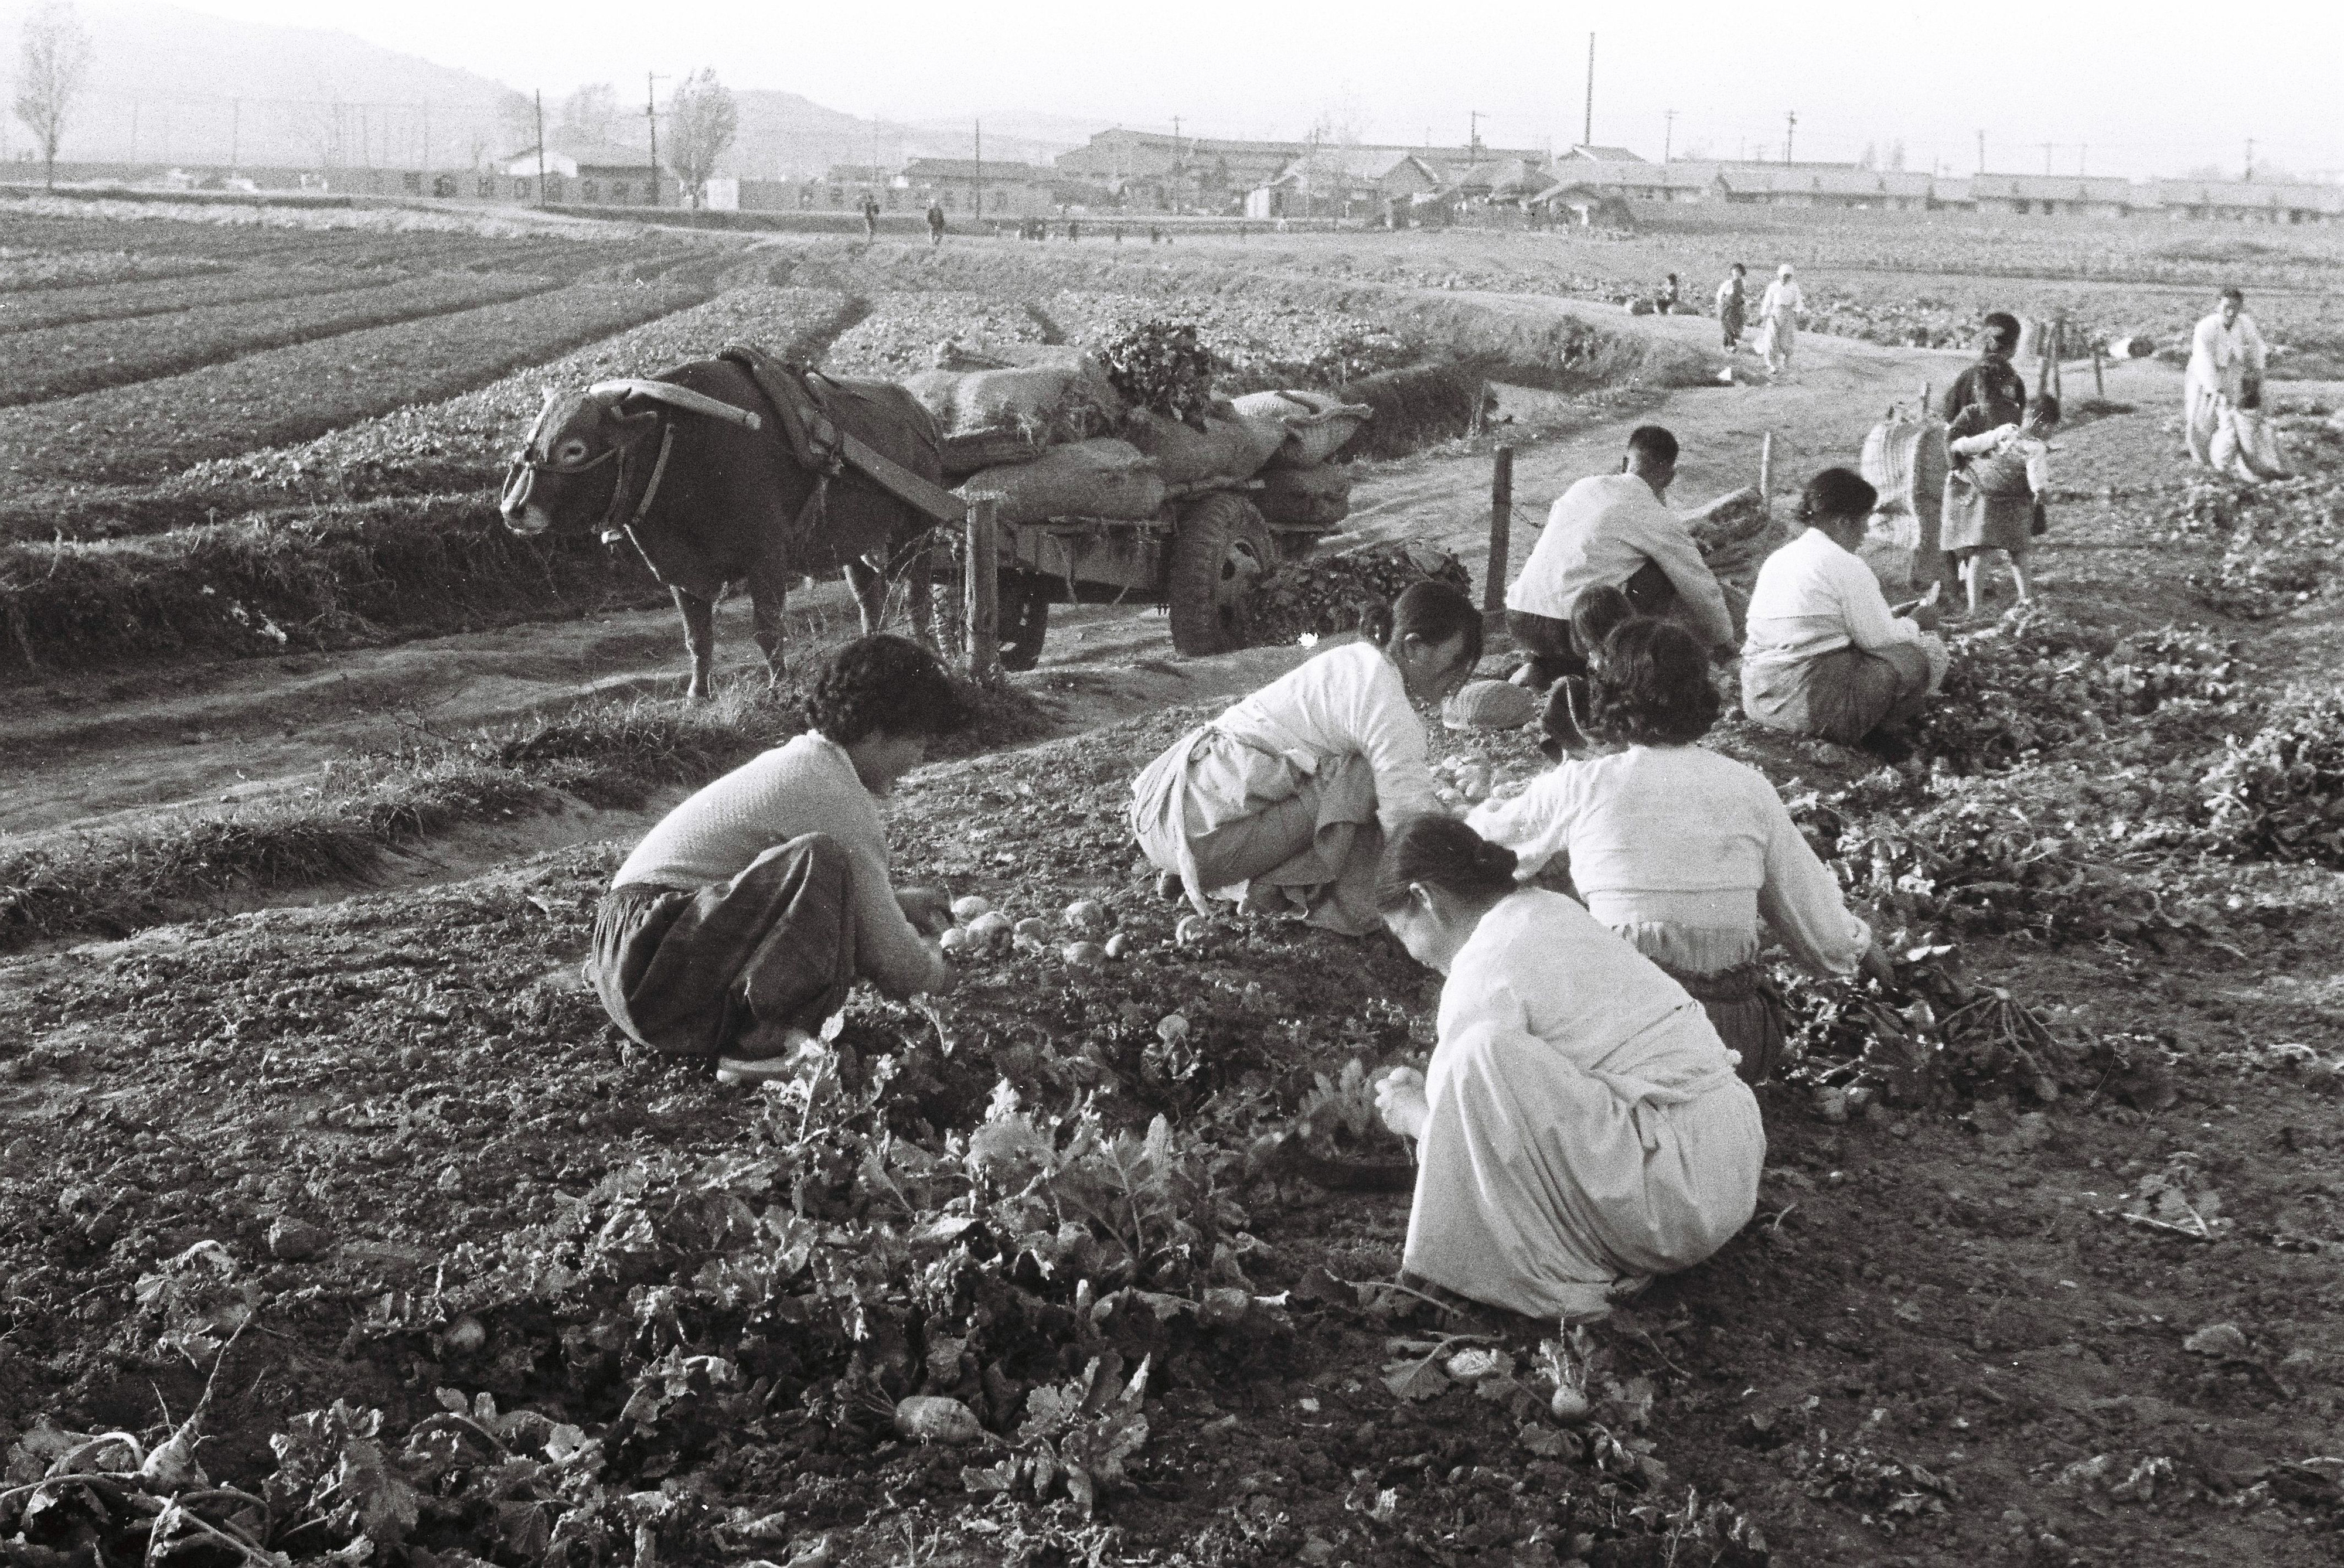 1965년 서울의 한 밭에서 주민들이 김장을 위해 배추와 무를 수확하고 있다. 1965. 11. 19 서울신문 사진창고